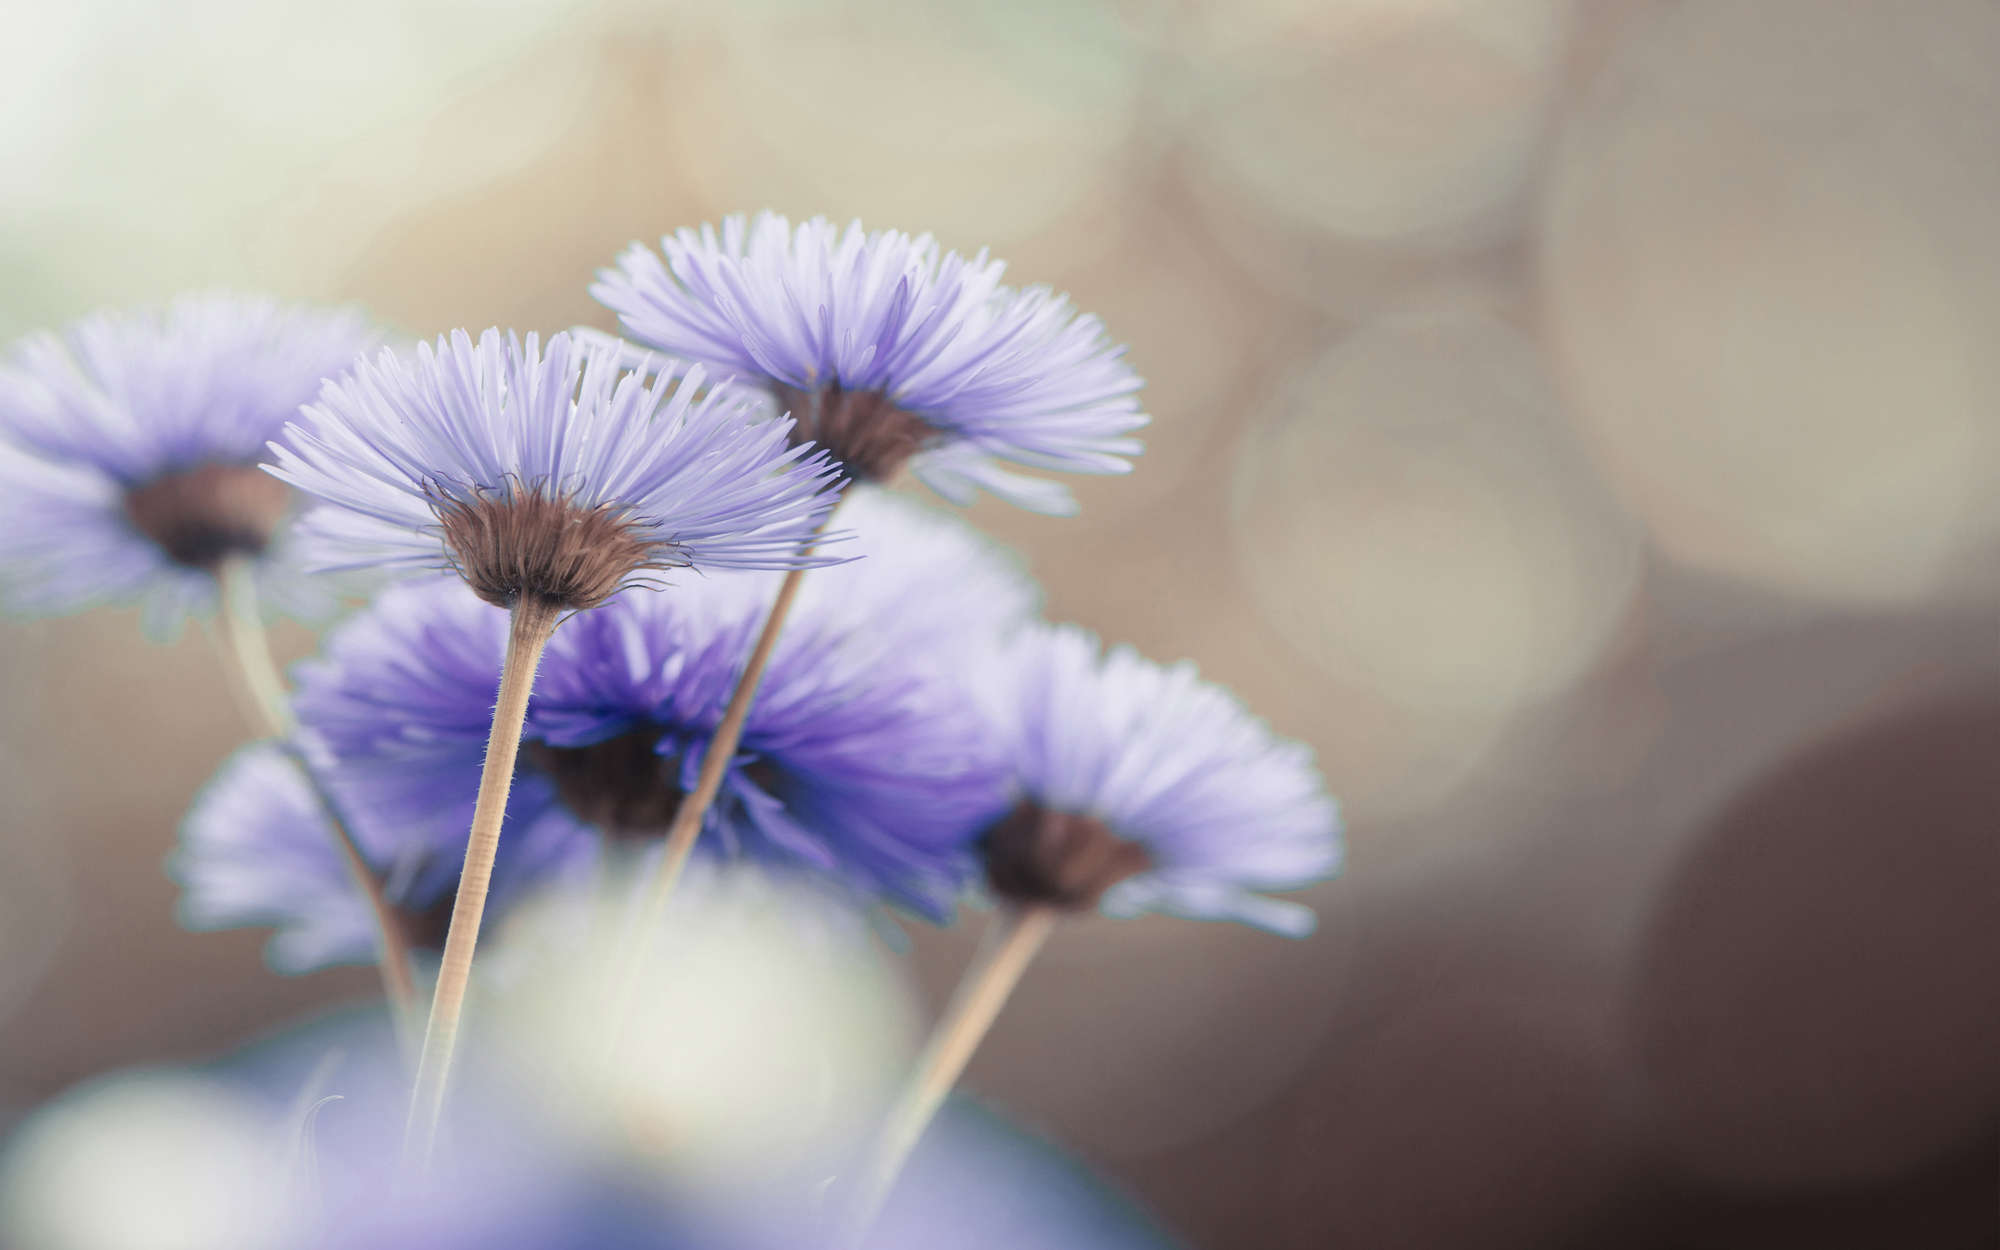             Fototapete Blumen in Violett – Strukturiertes Vlies
        